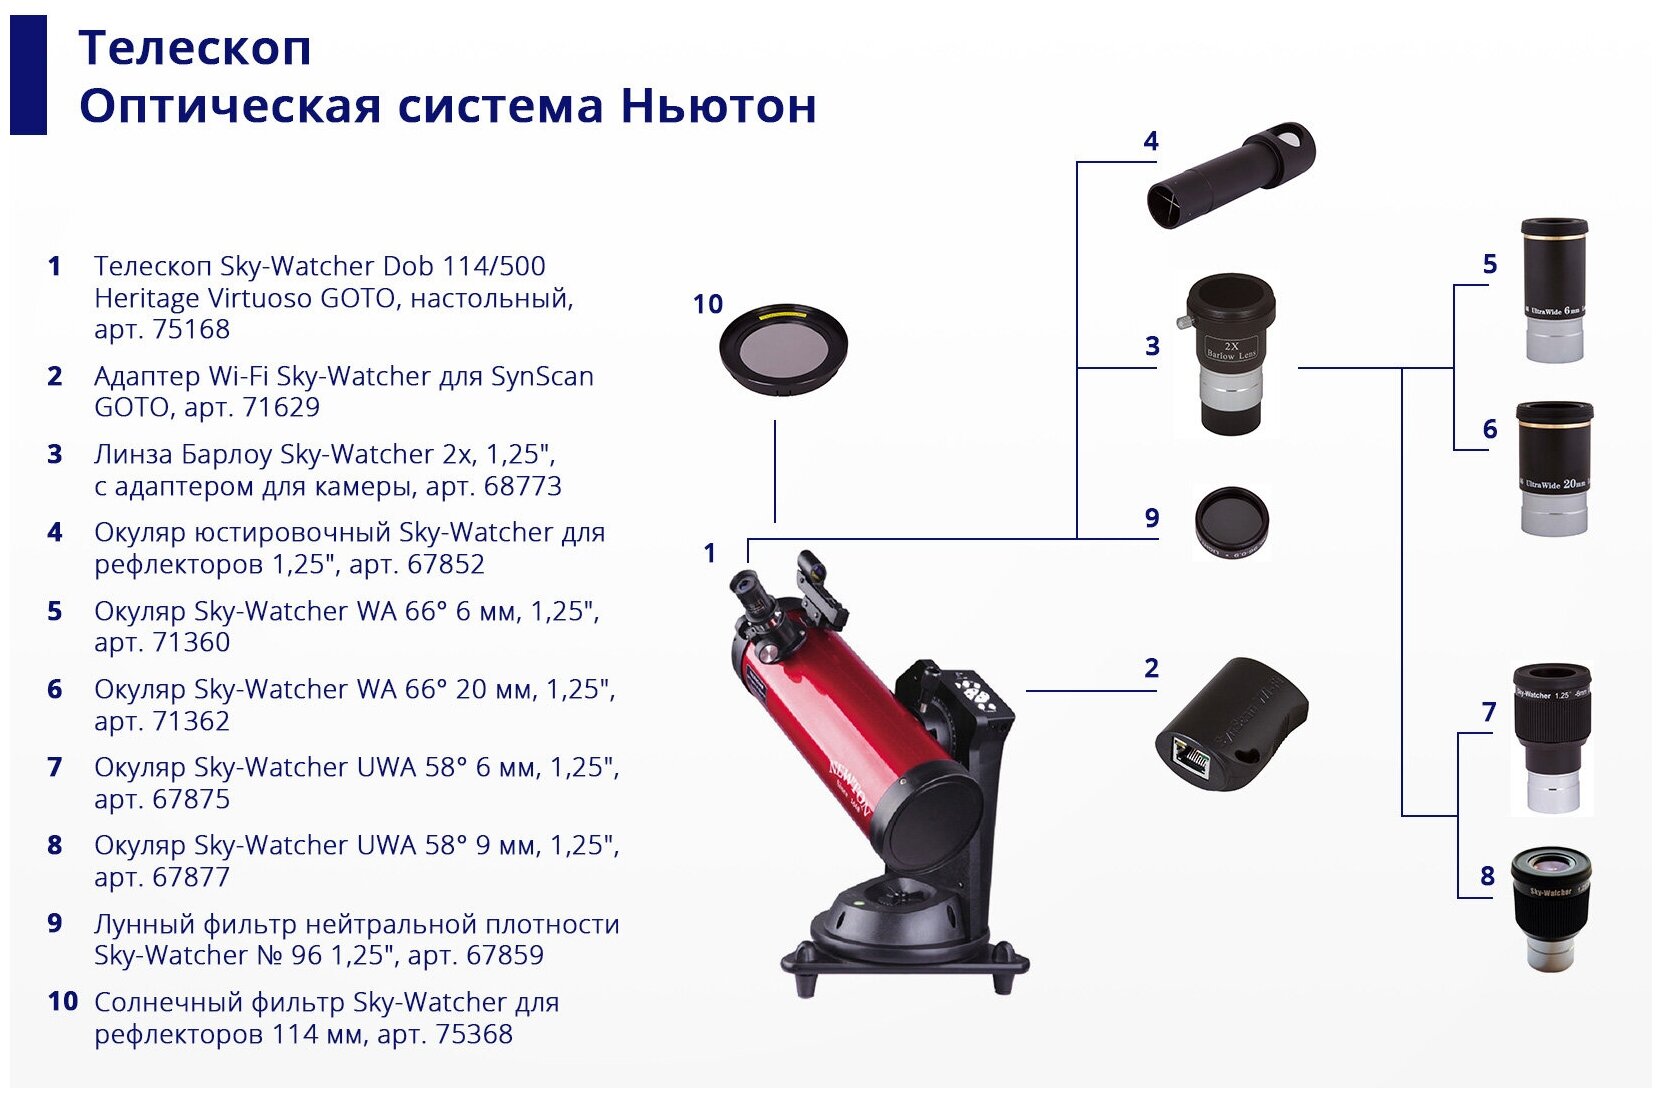 Sky-Watcher (Скай-Вотчер) Солнечный фильтр Sky-Watcher для рефлекторов 114 мм — купить в интернет-магазине по низкой цене на Яндекс Маркете